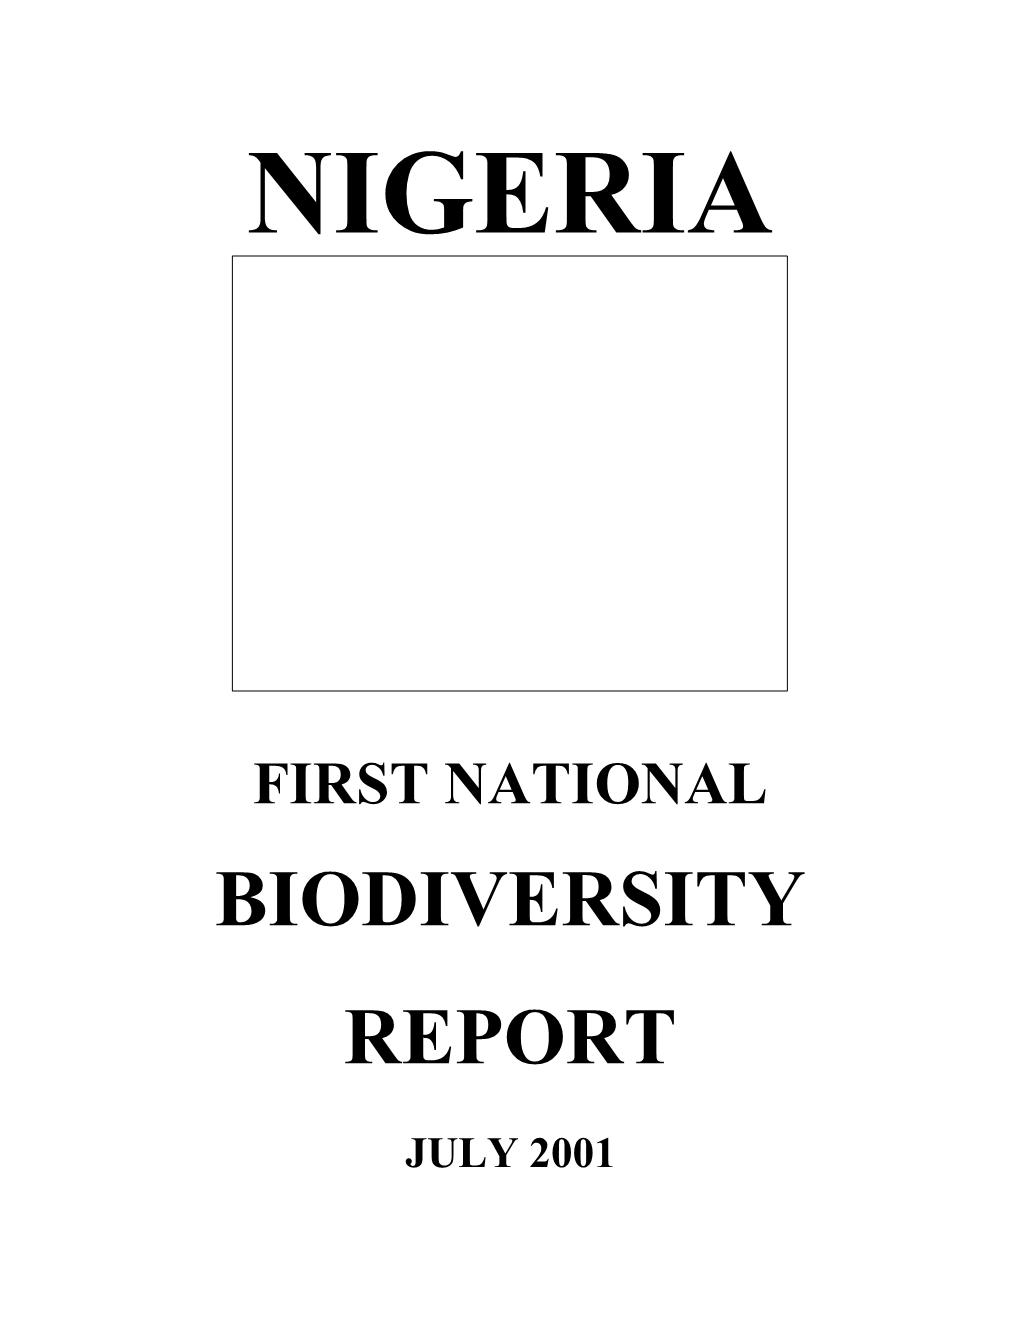 Biodiversity Report